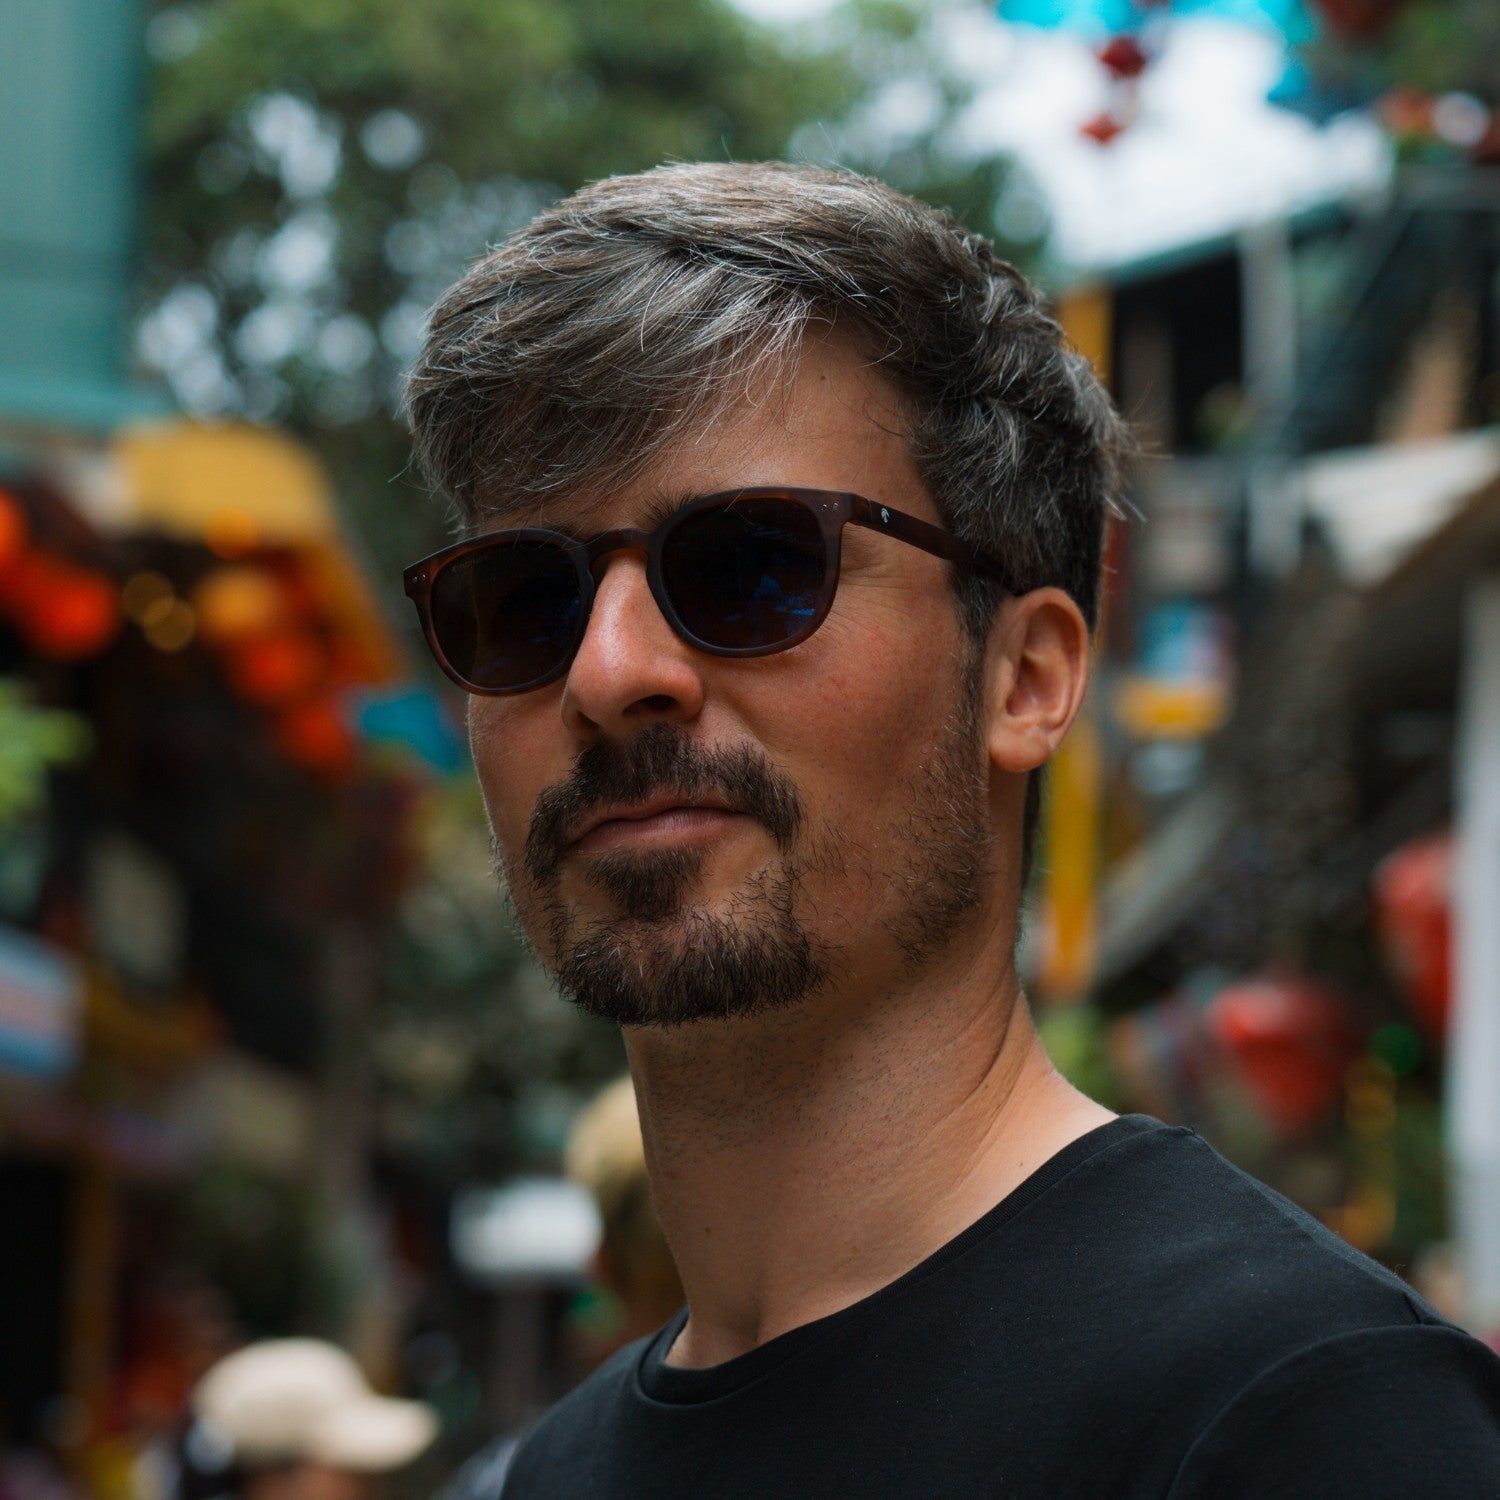 Notre cofondateur Paul porte les lunettes de soleil stockholm dans une rue de Hanoi